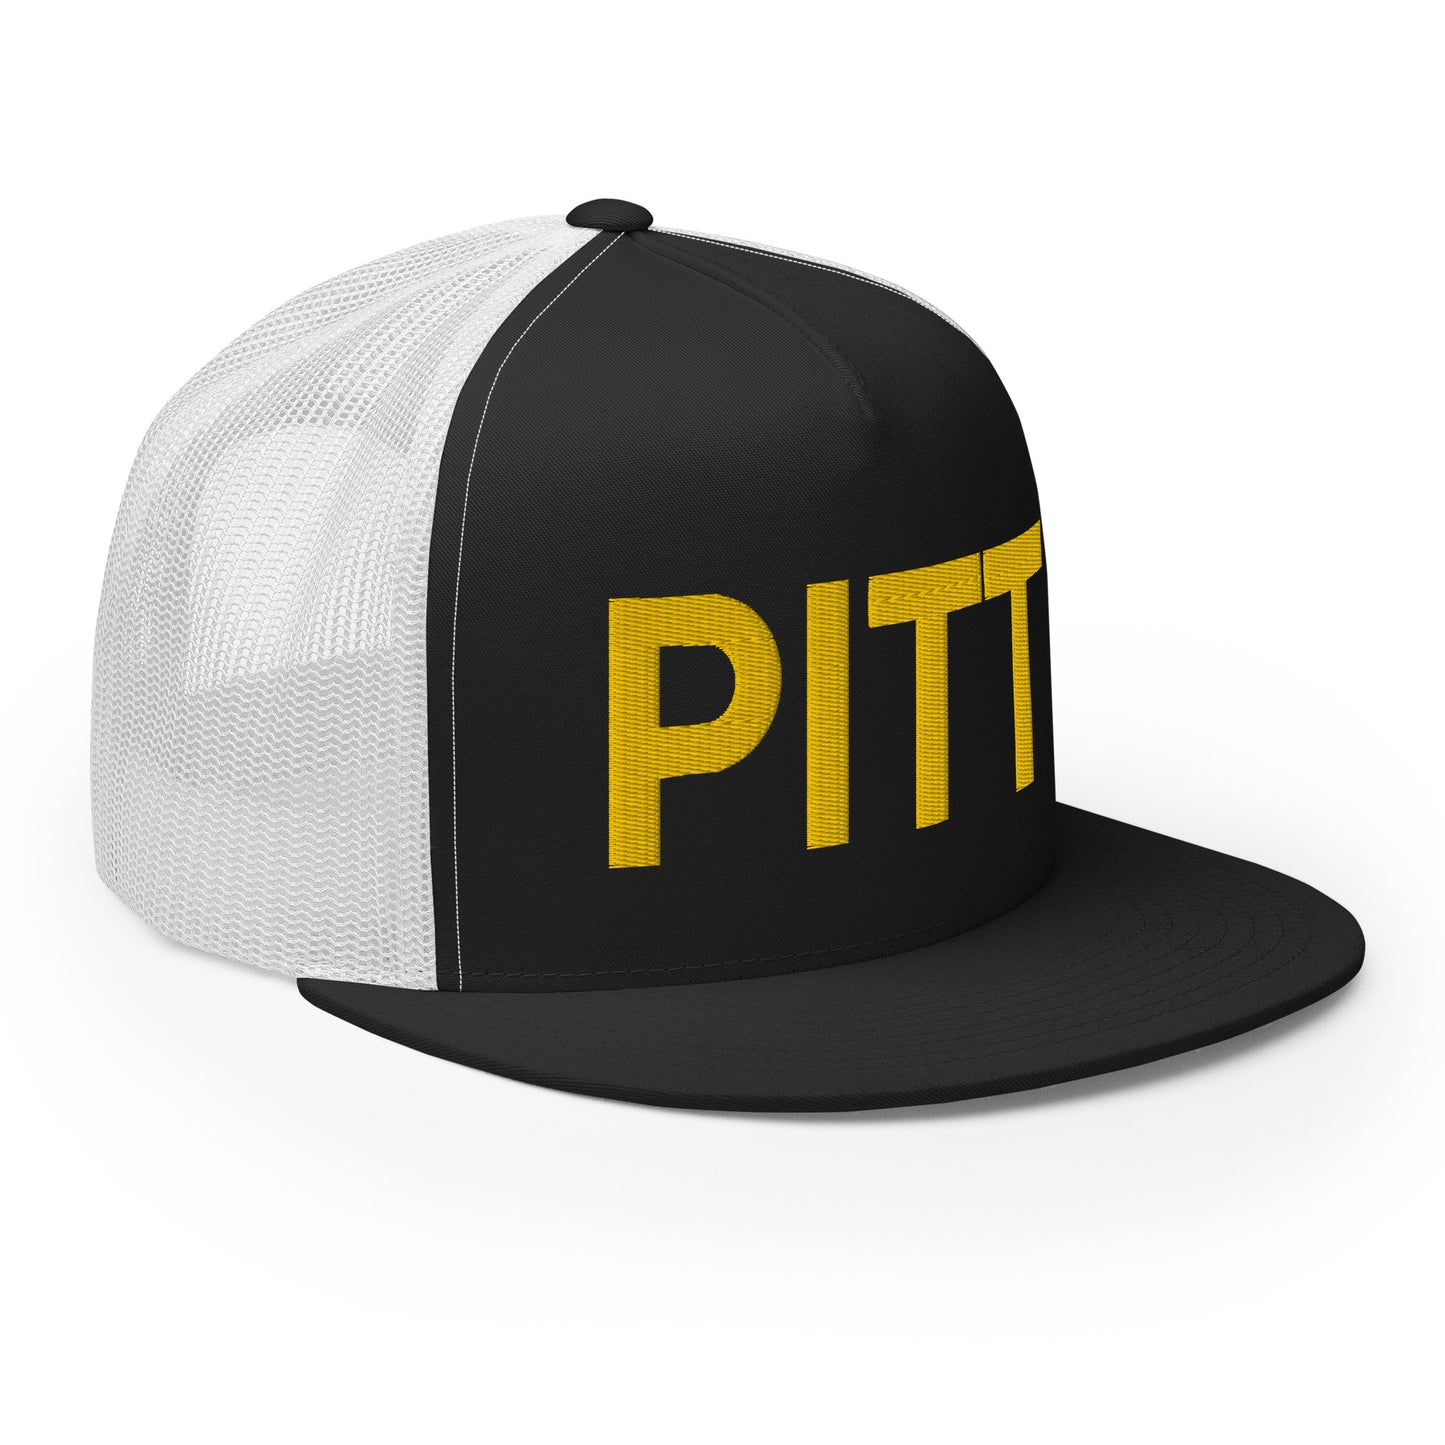 PITT Pittsburgh Strong Trucker Hat